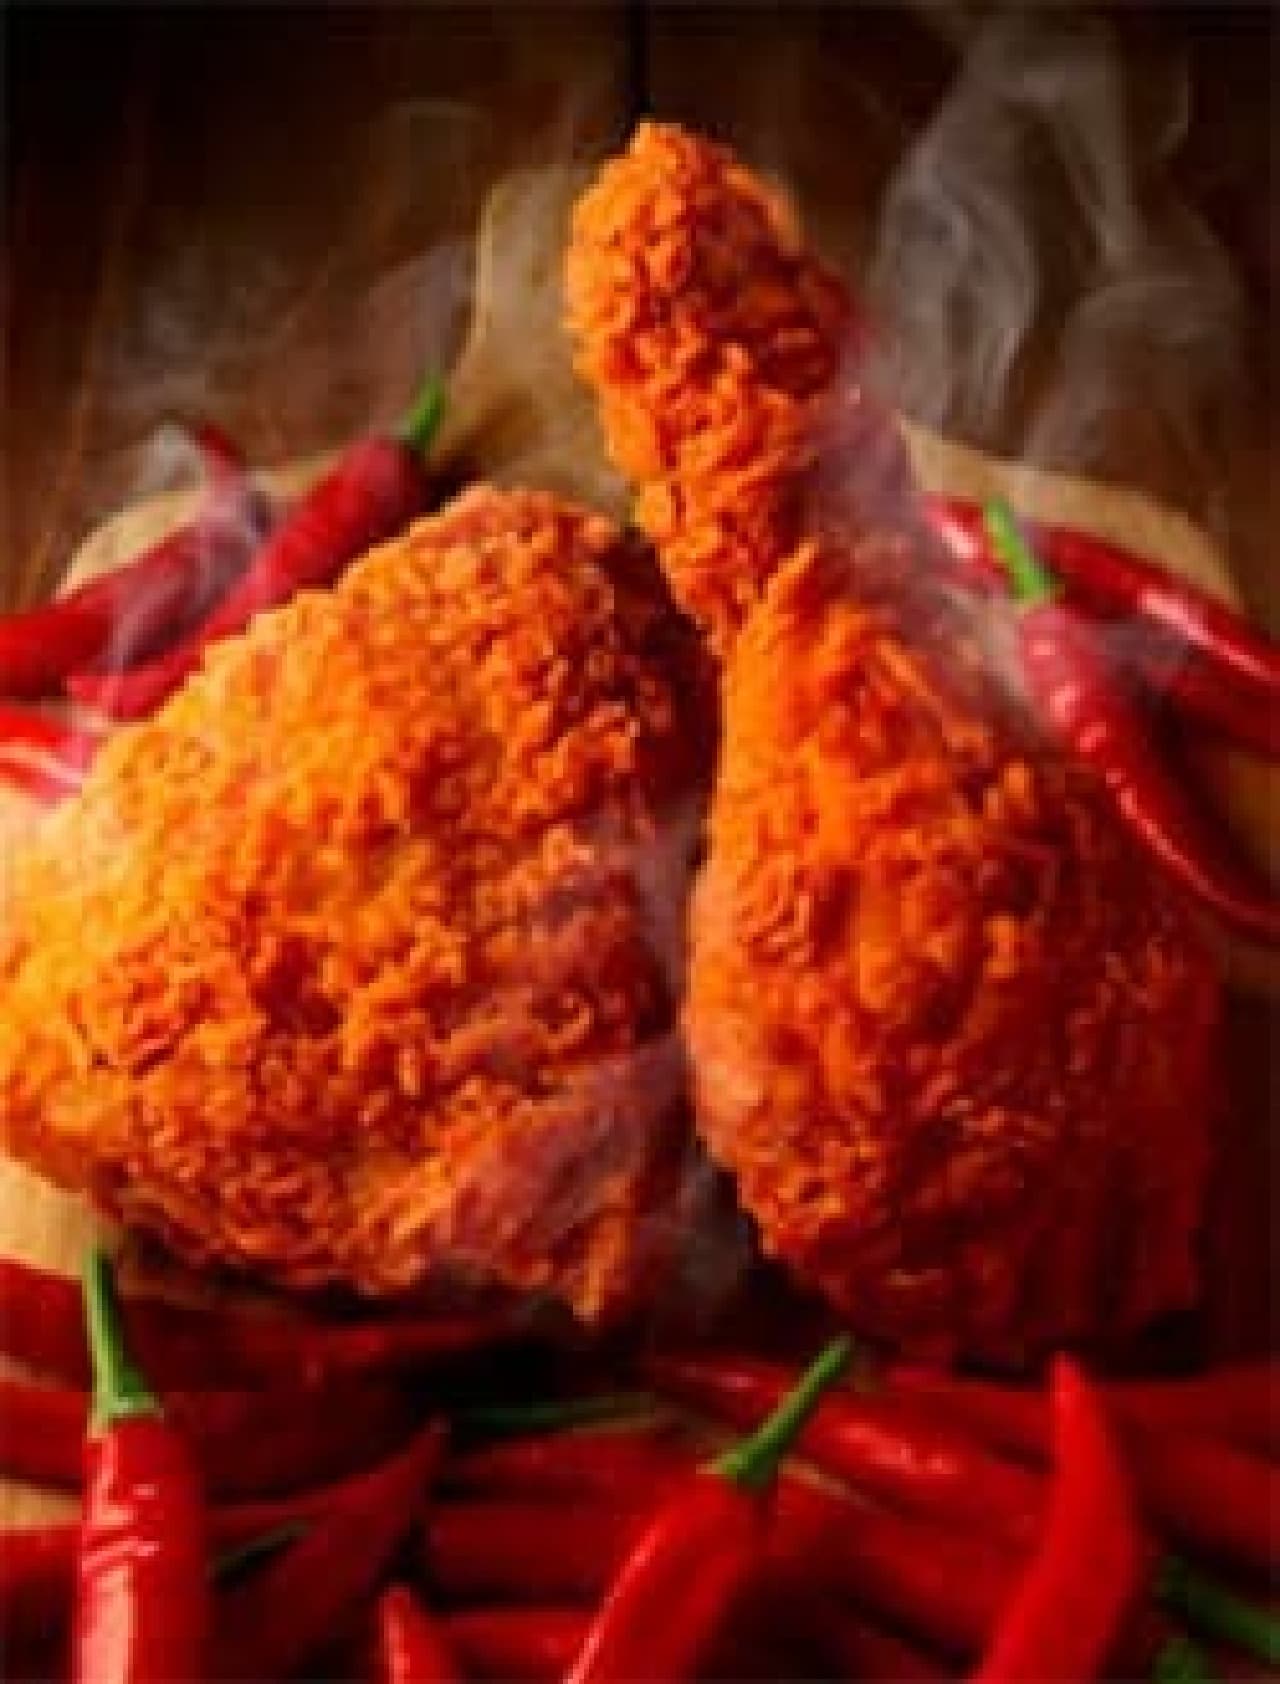 Red hot chicken